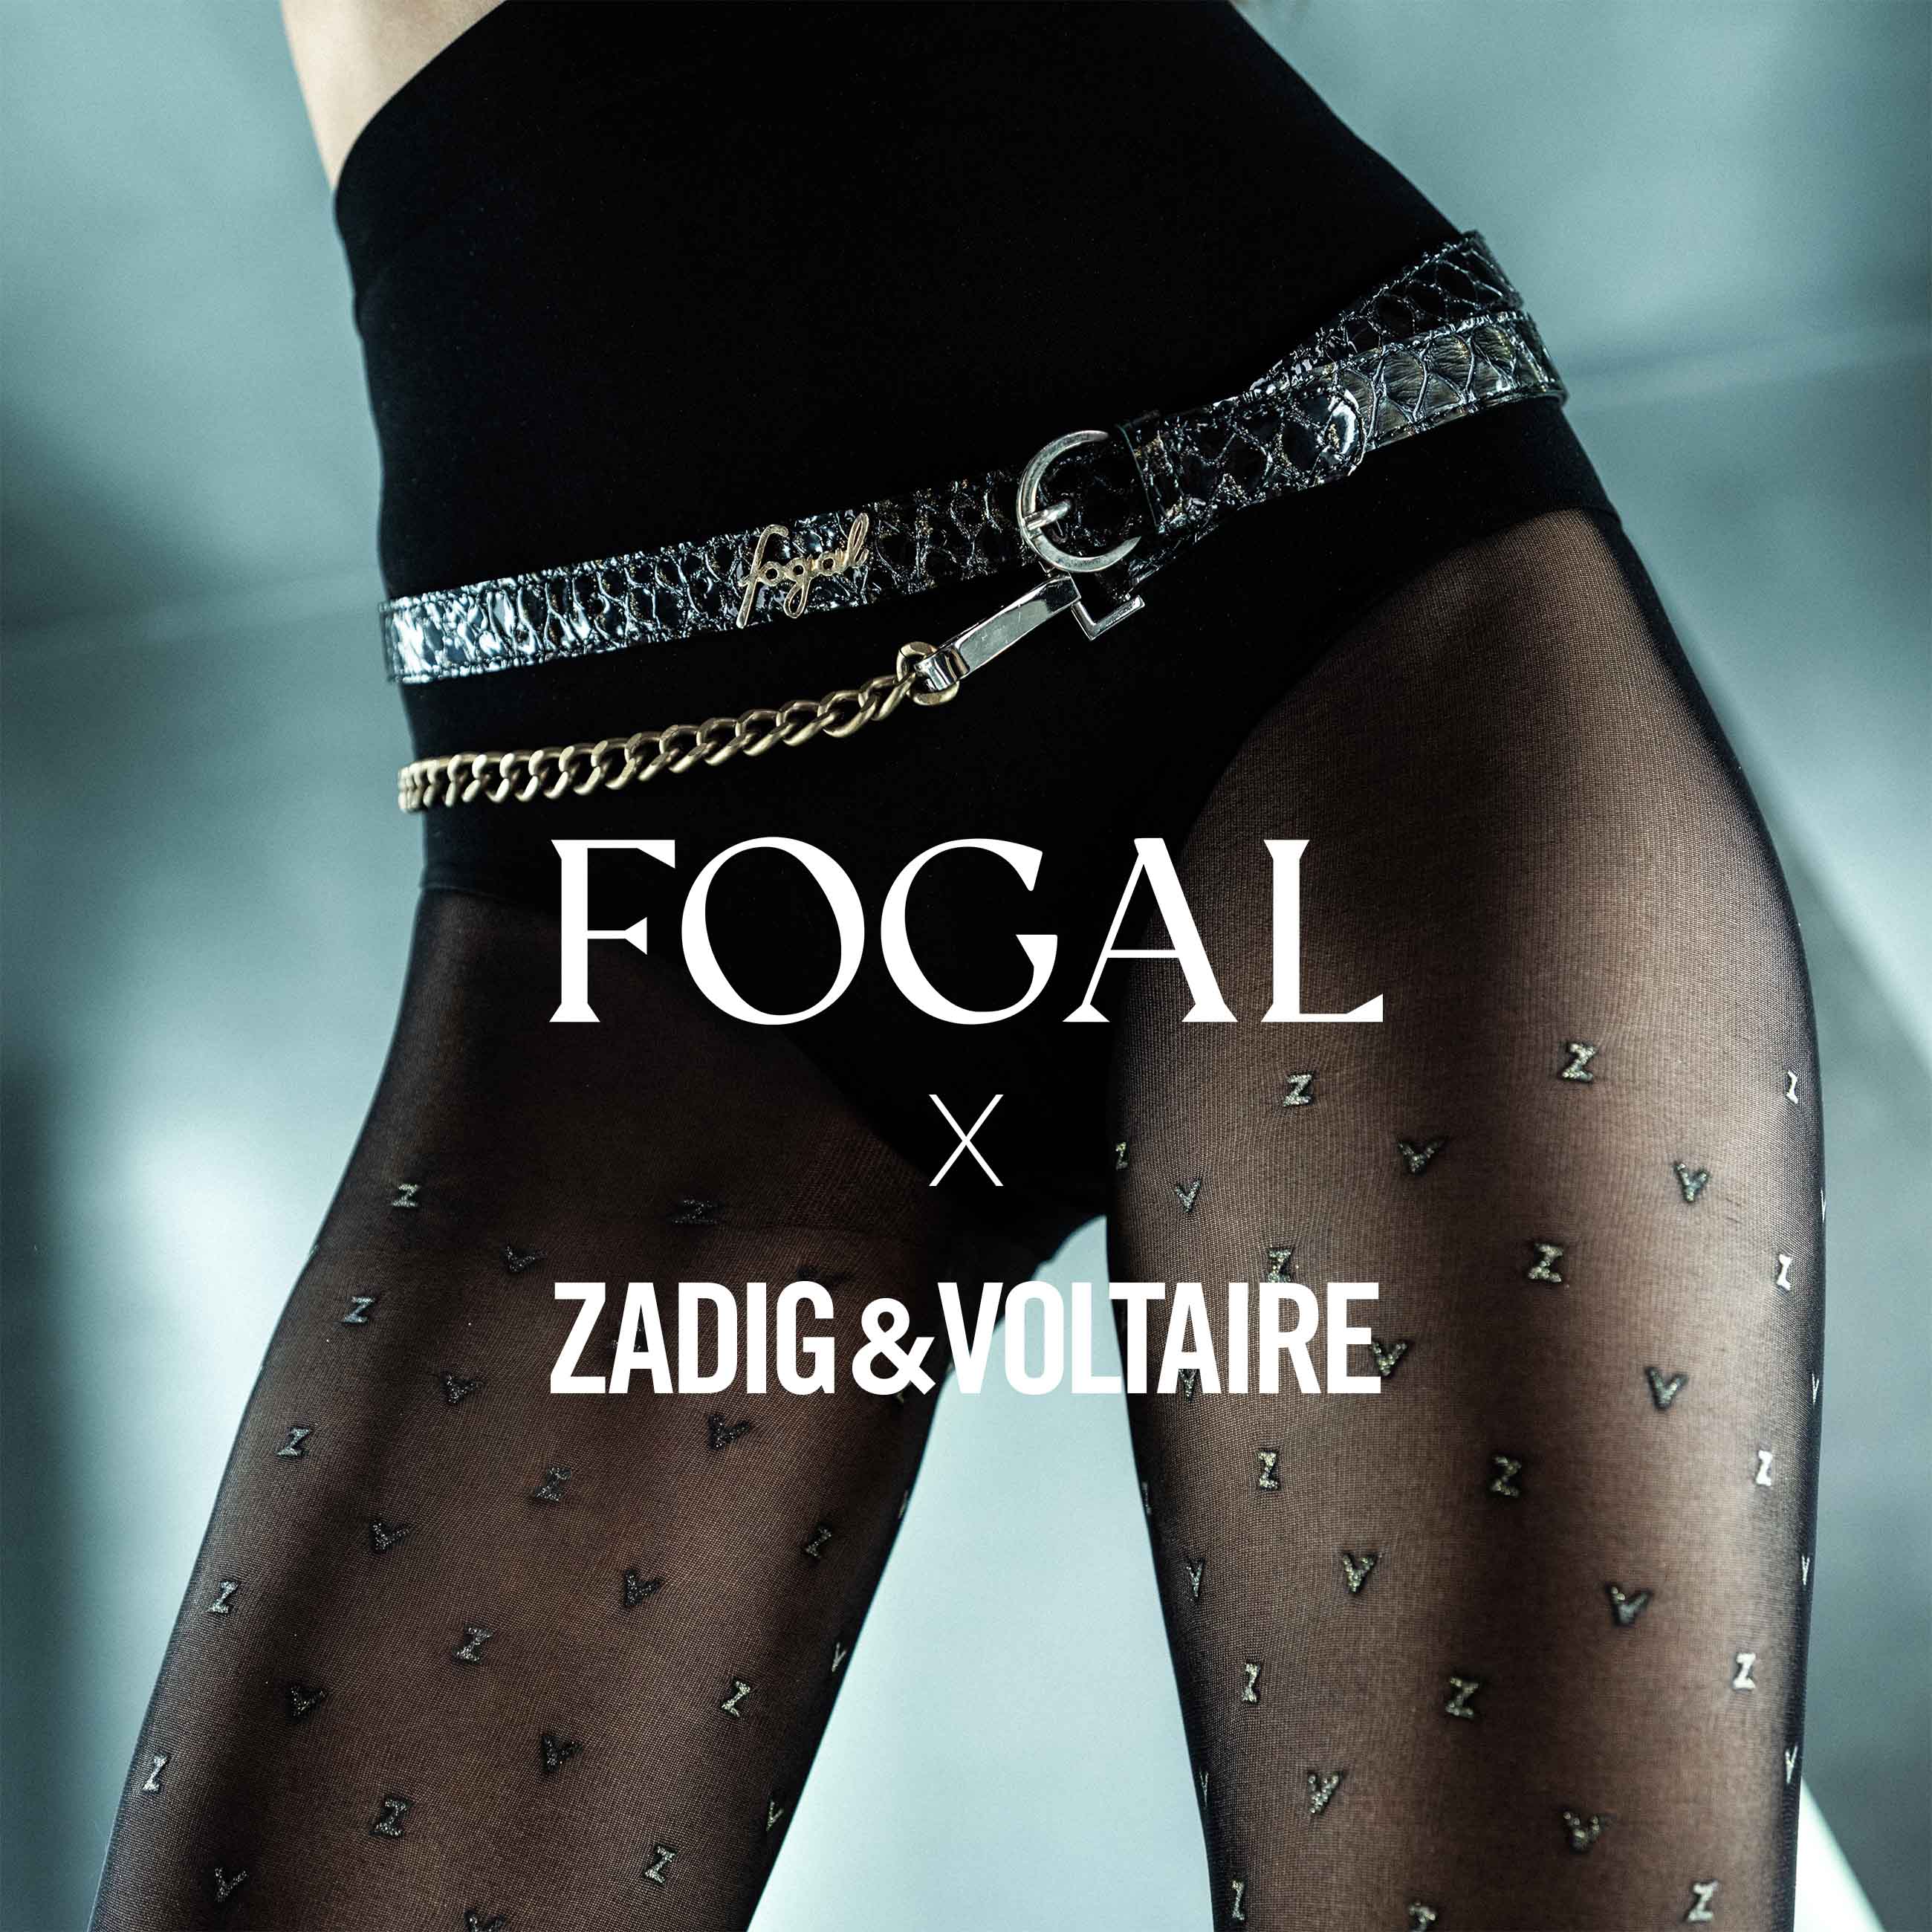 Fogal | Swiss Bodywear since 1921 | Official site – Fogal.com